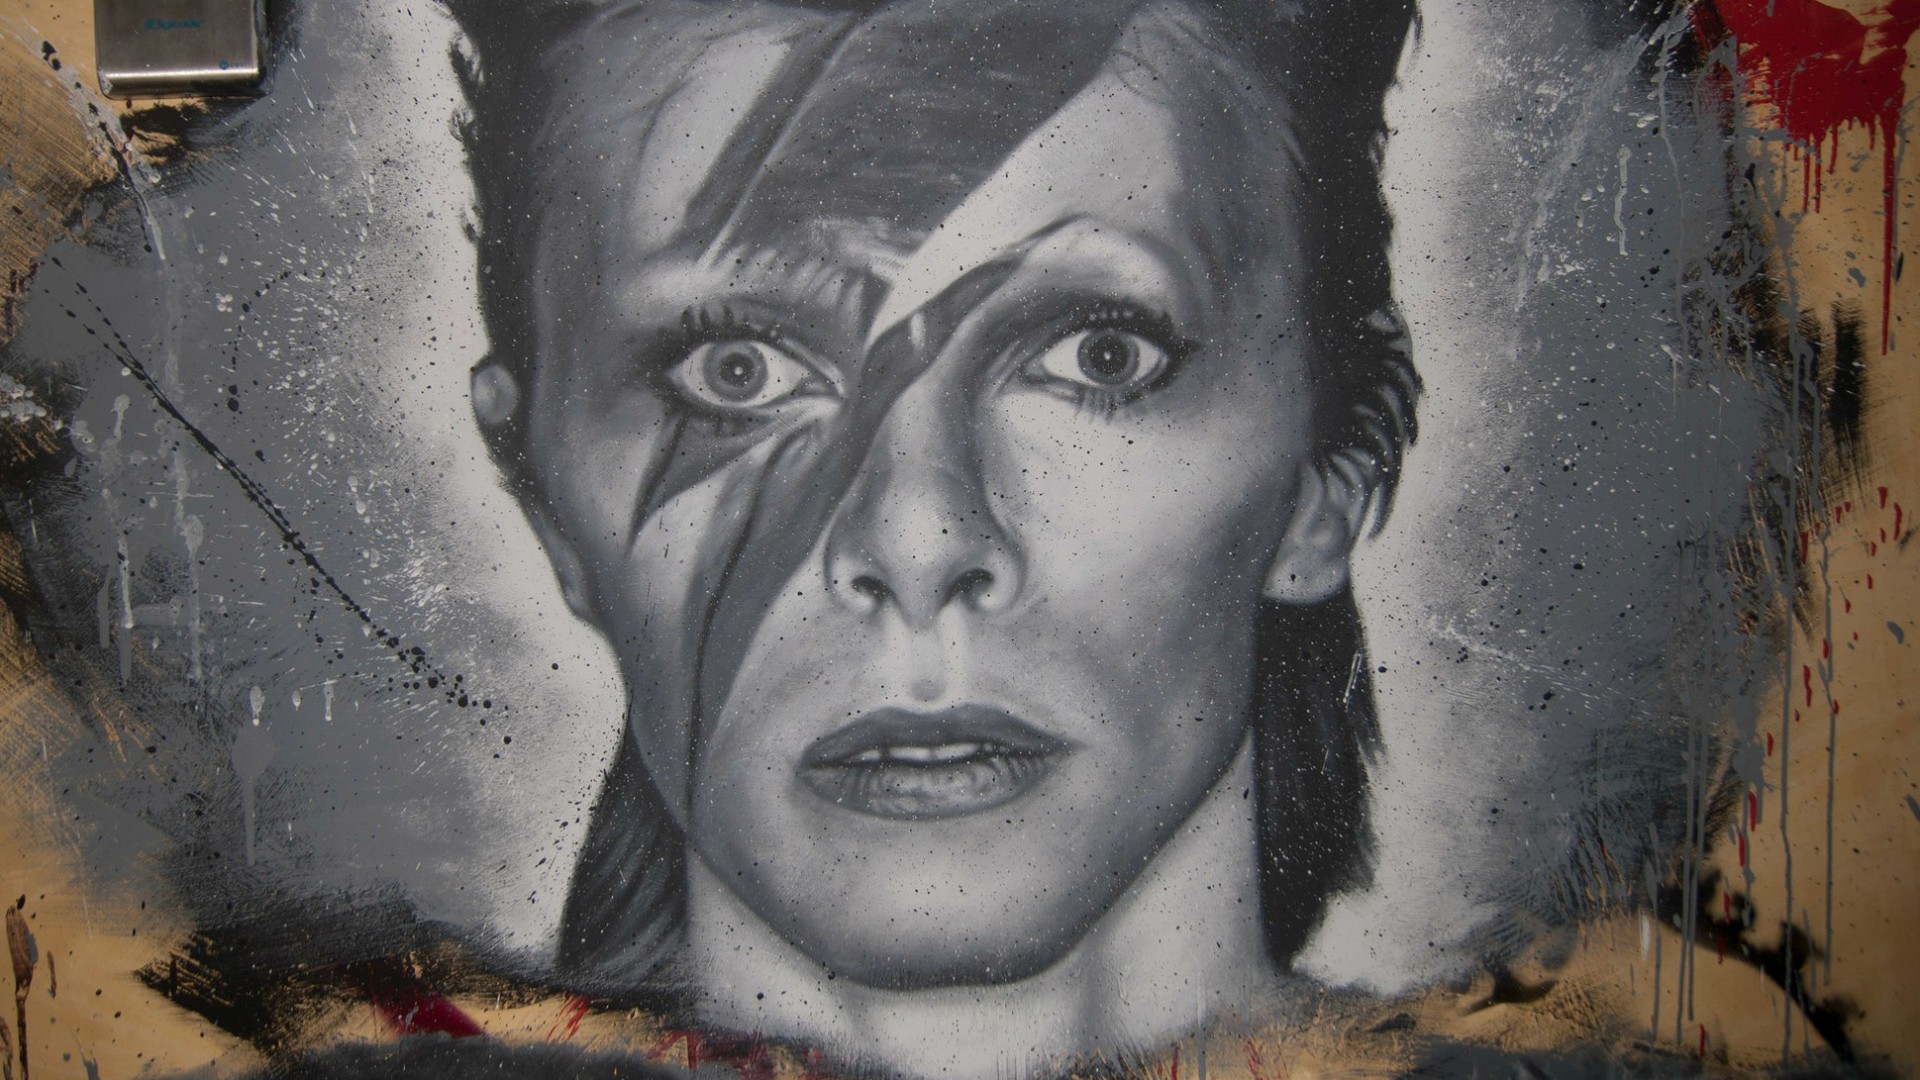 Le chanteur David Bowie est décédé le 10 janvier 2016 (Photo:thierry ehrmann/Flickr/CC BY 2.0)